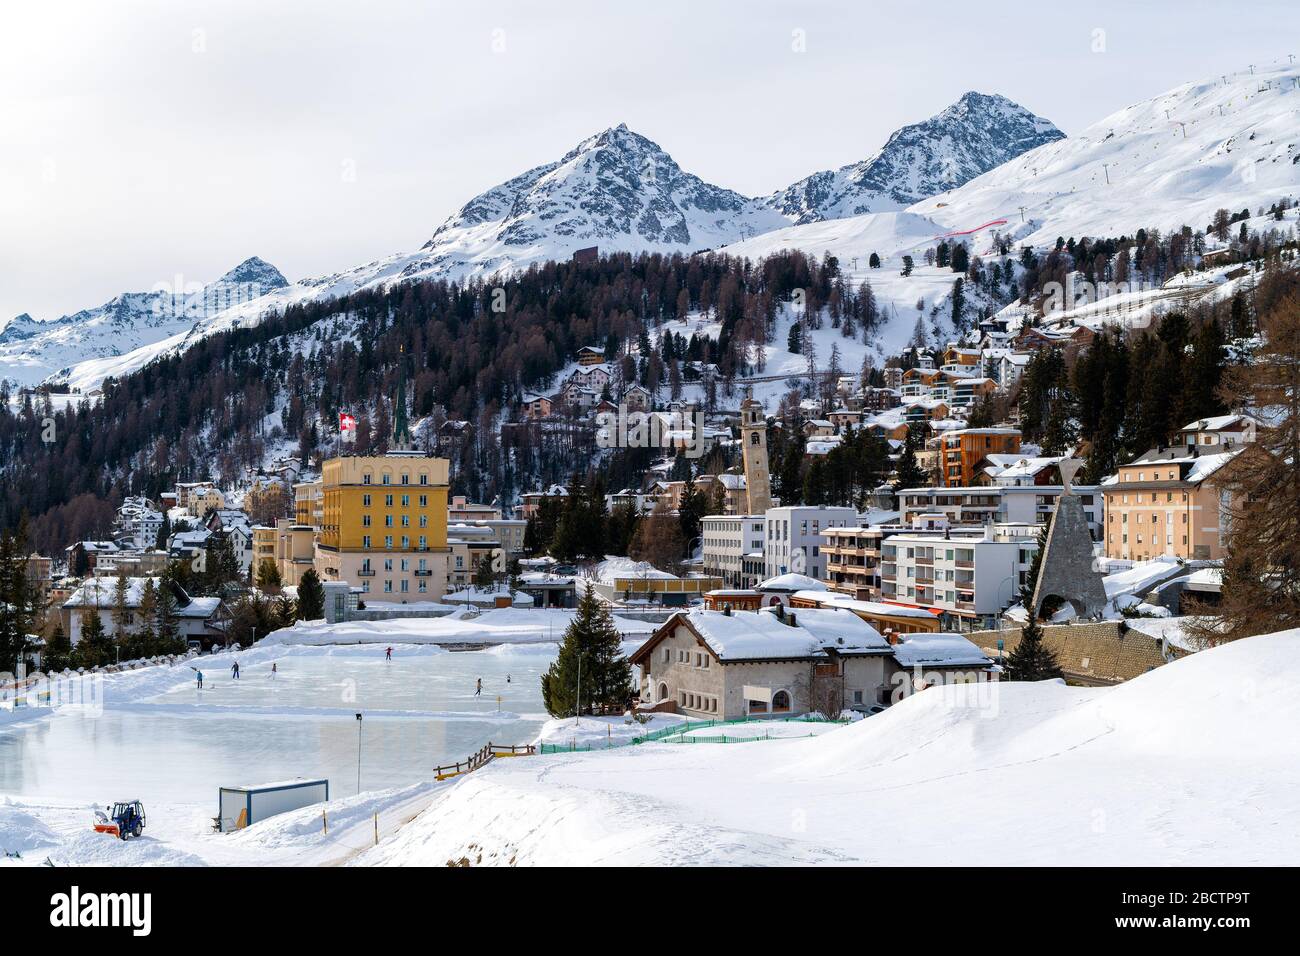 Paysage urbain de la destination touristique Saint-Moritz (Suisse) dans les Alpes suisses Banque D'Images